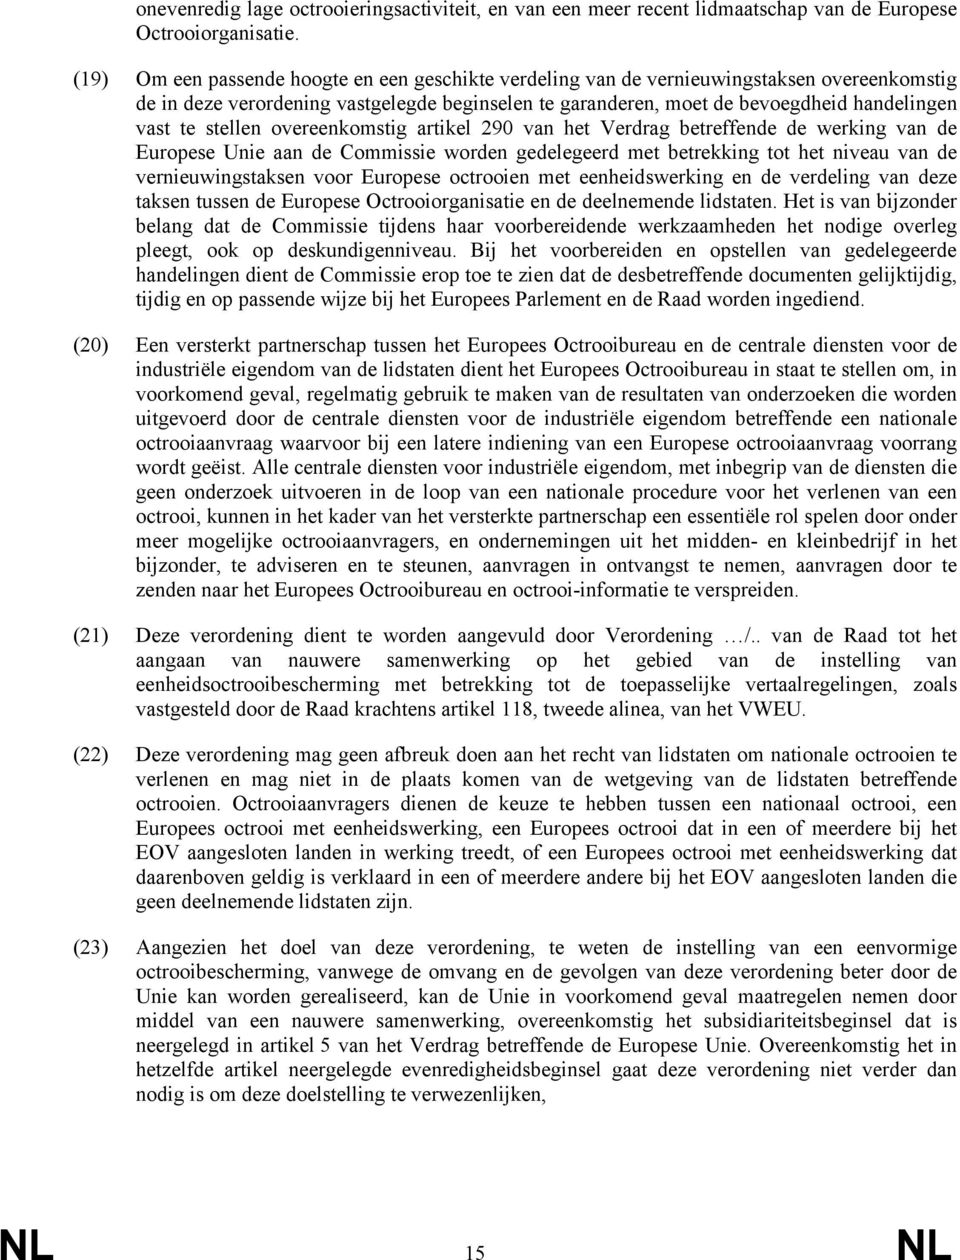 stellen overeenkomstig artikel 290 van het Verdrag betreffende de werking van de Europese Unie aan de Commissie worden gedelegeerd met betrekking tot het niveau van de vernieuwingstaksen voor